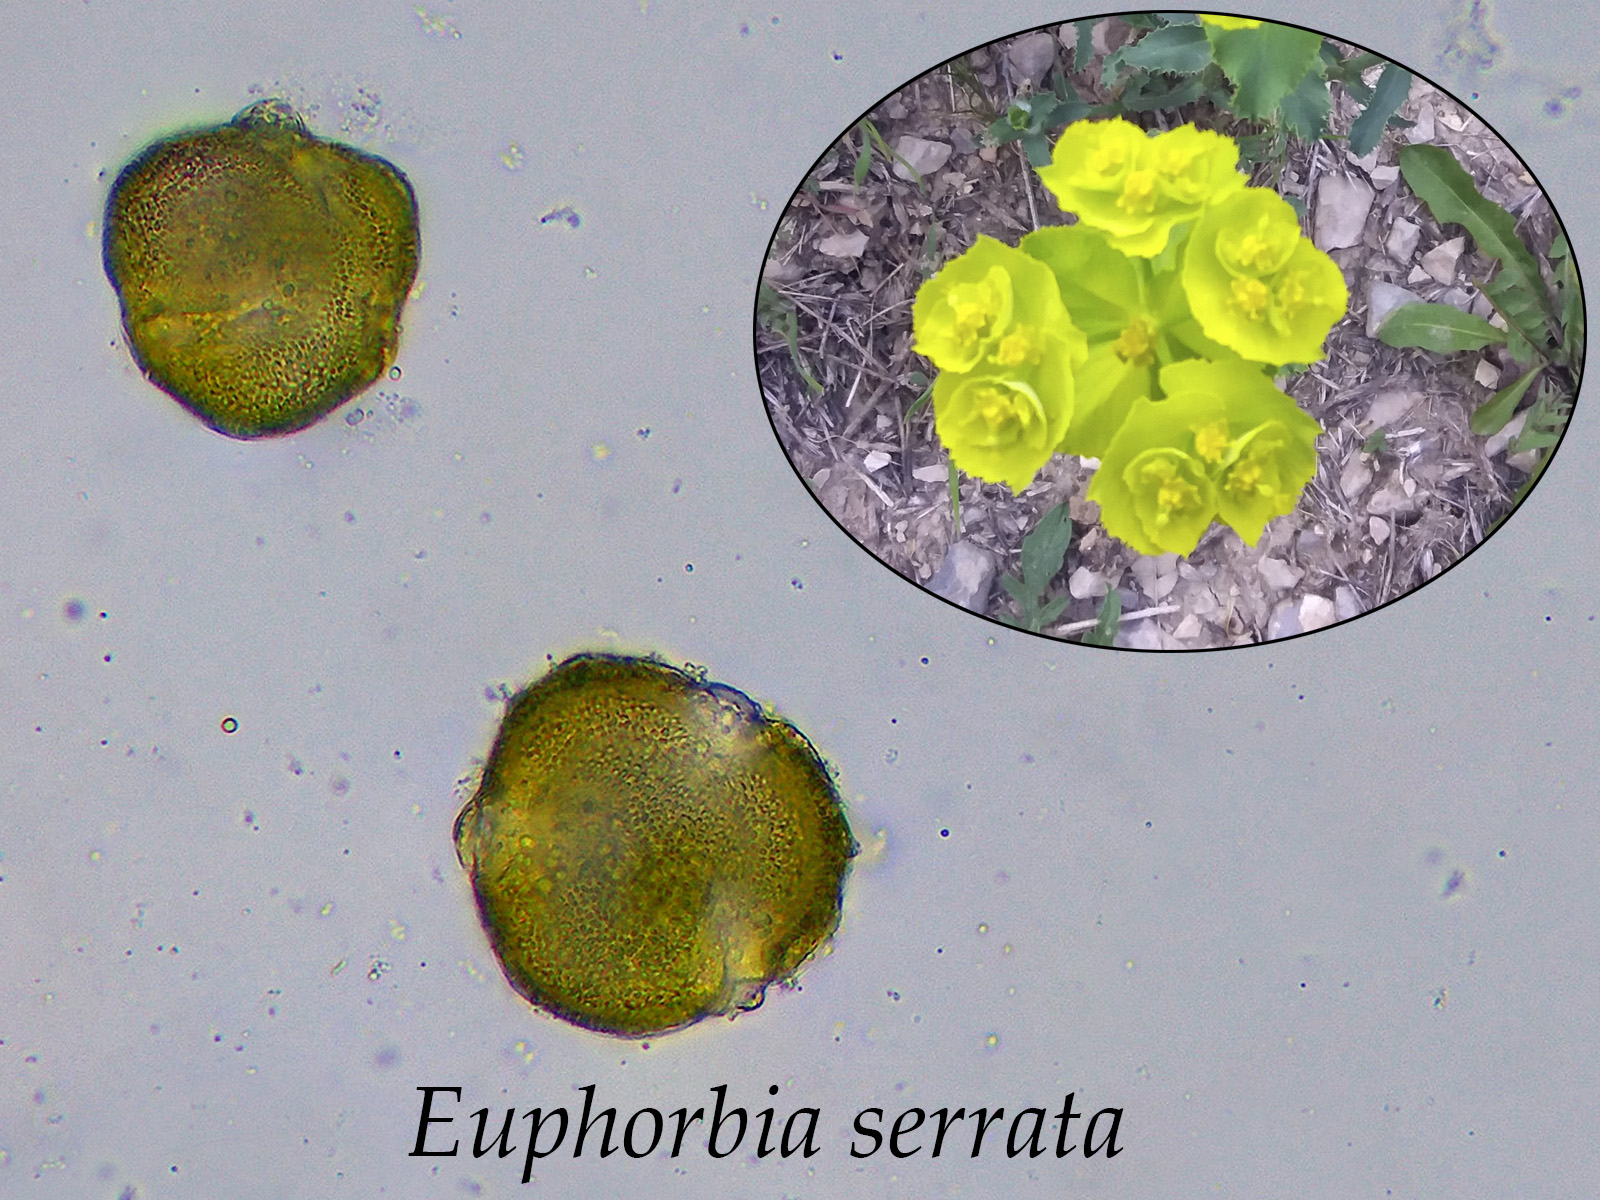 Euphorbiaserrata.jpg